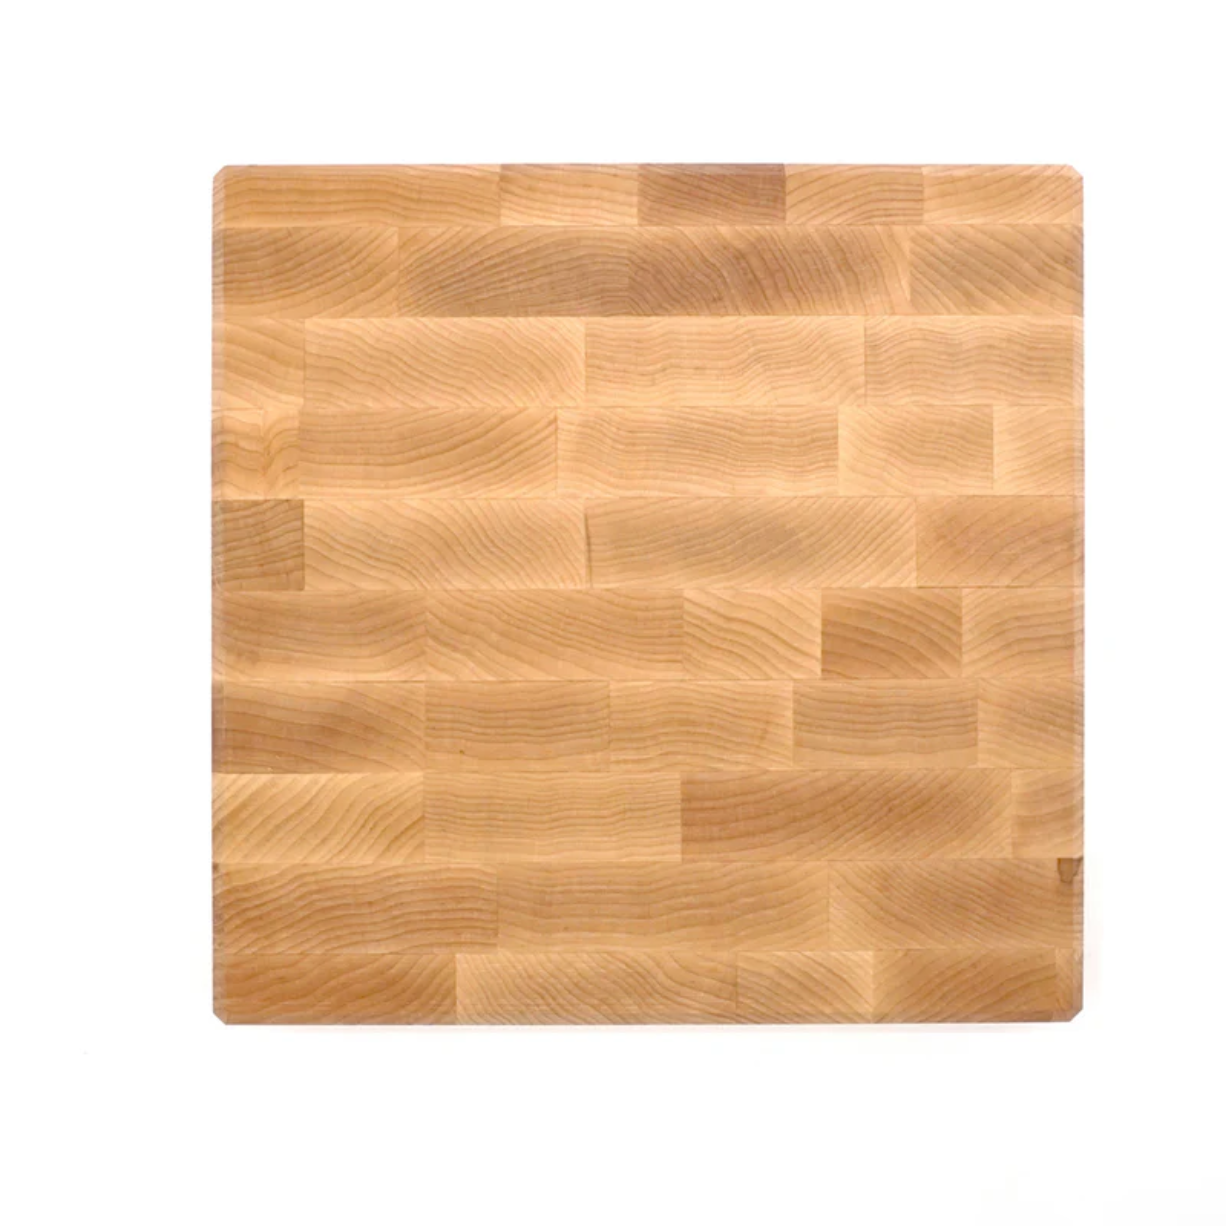 JK Adams Professional End Grain Maple Board, Multiple Sizes